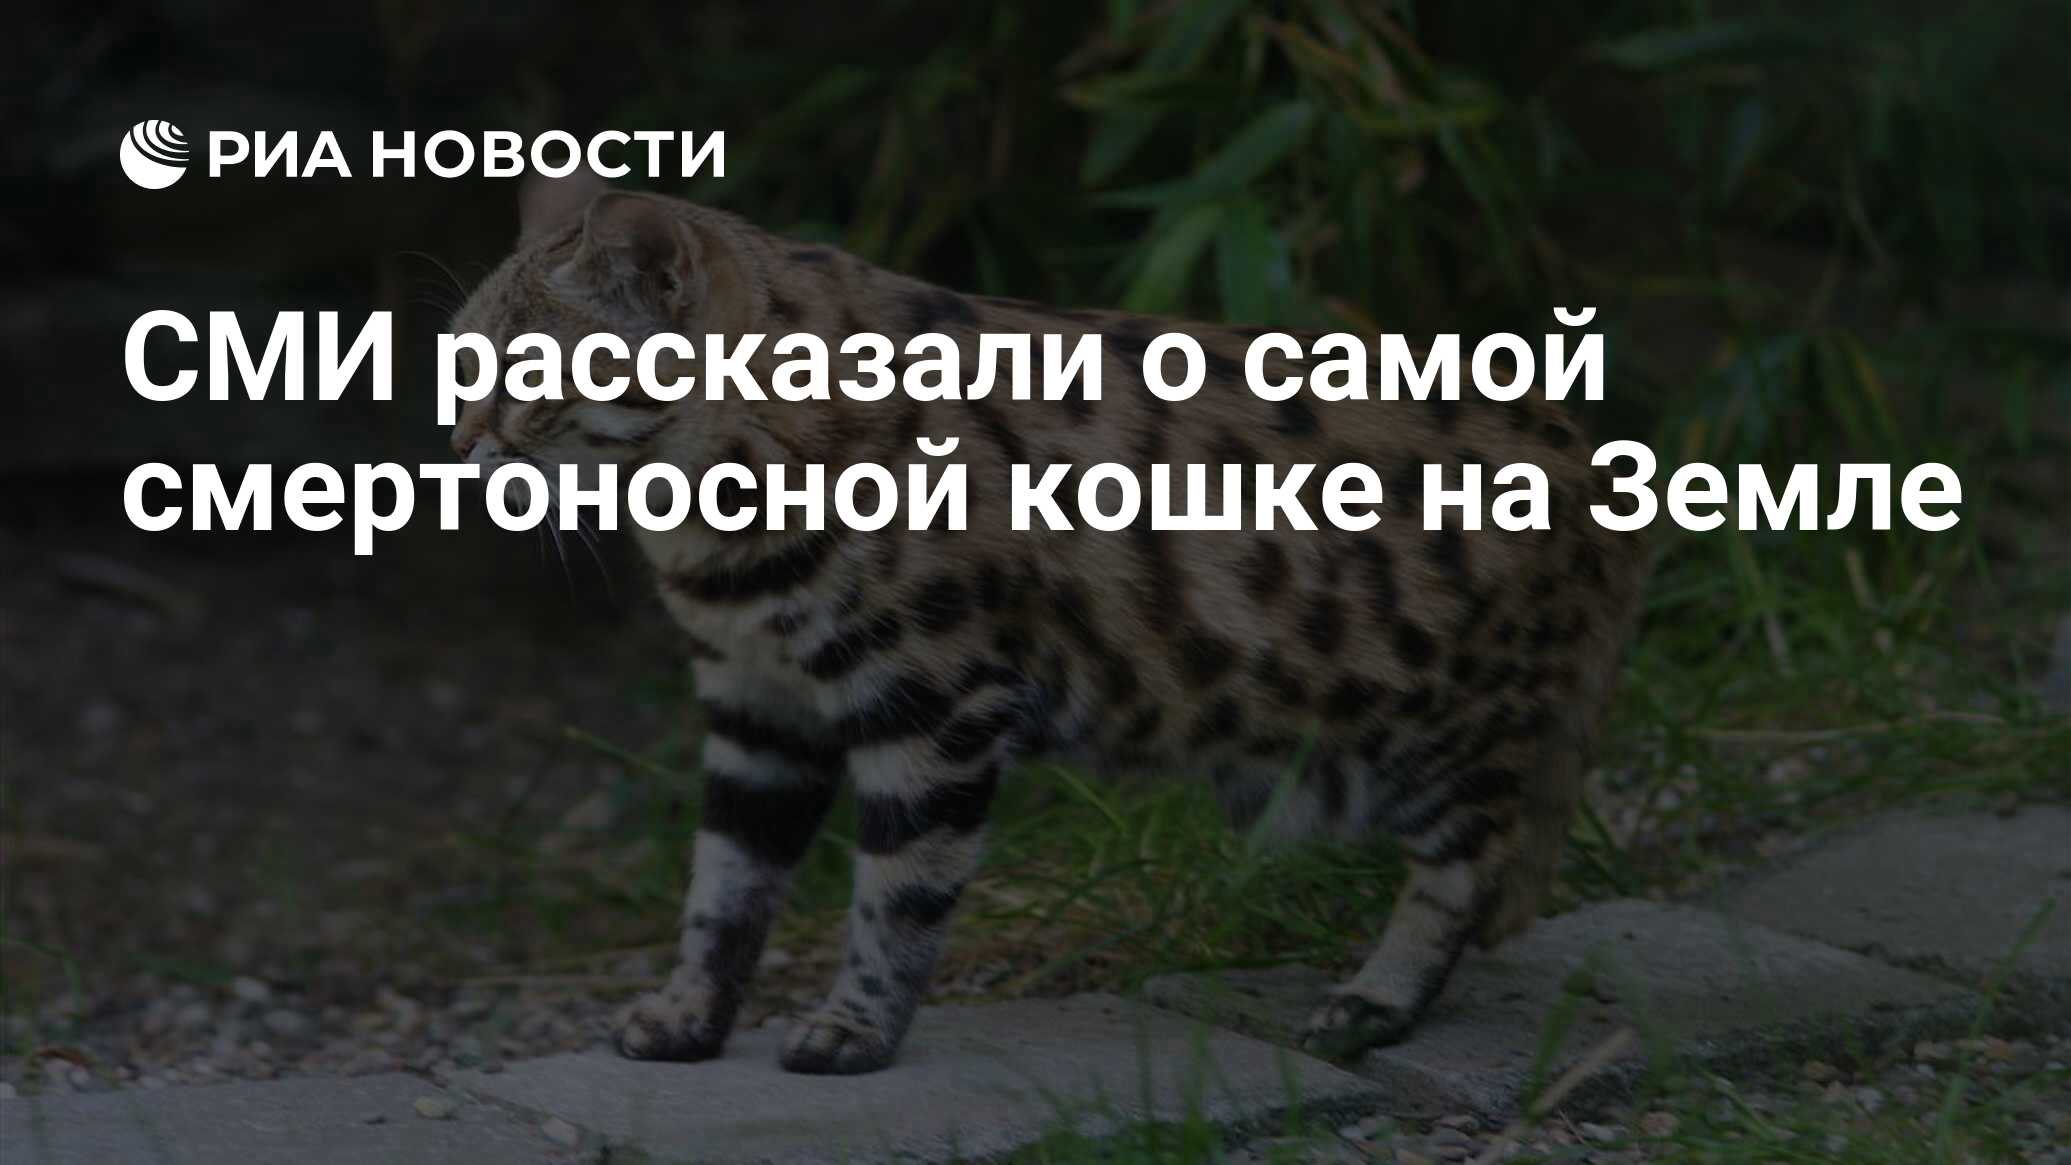 СМИ рассказали о самой смертоносной кошке на Земле - РИА Новости, 06.11.2018